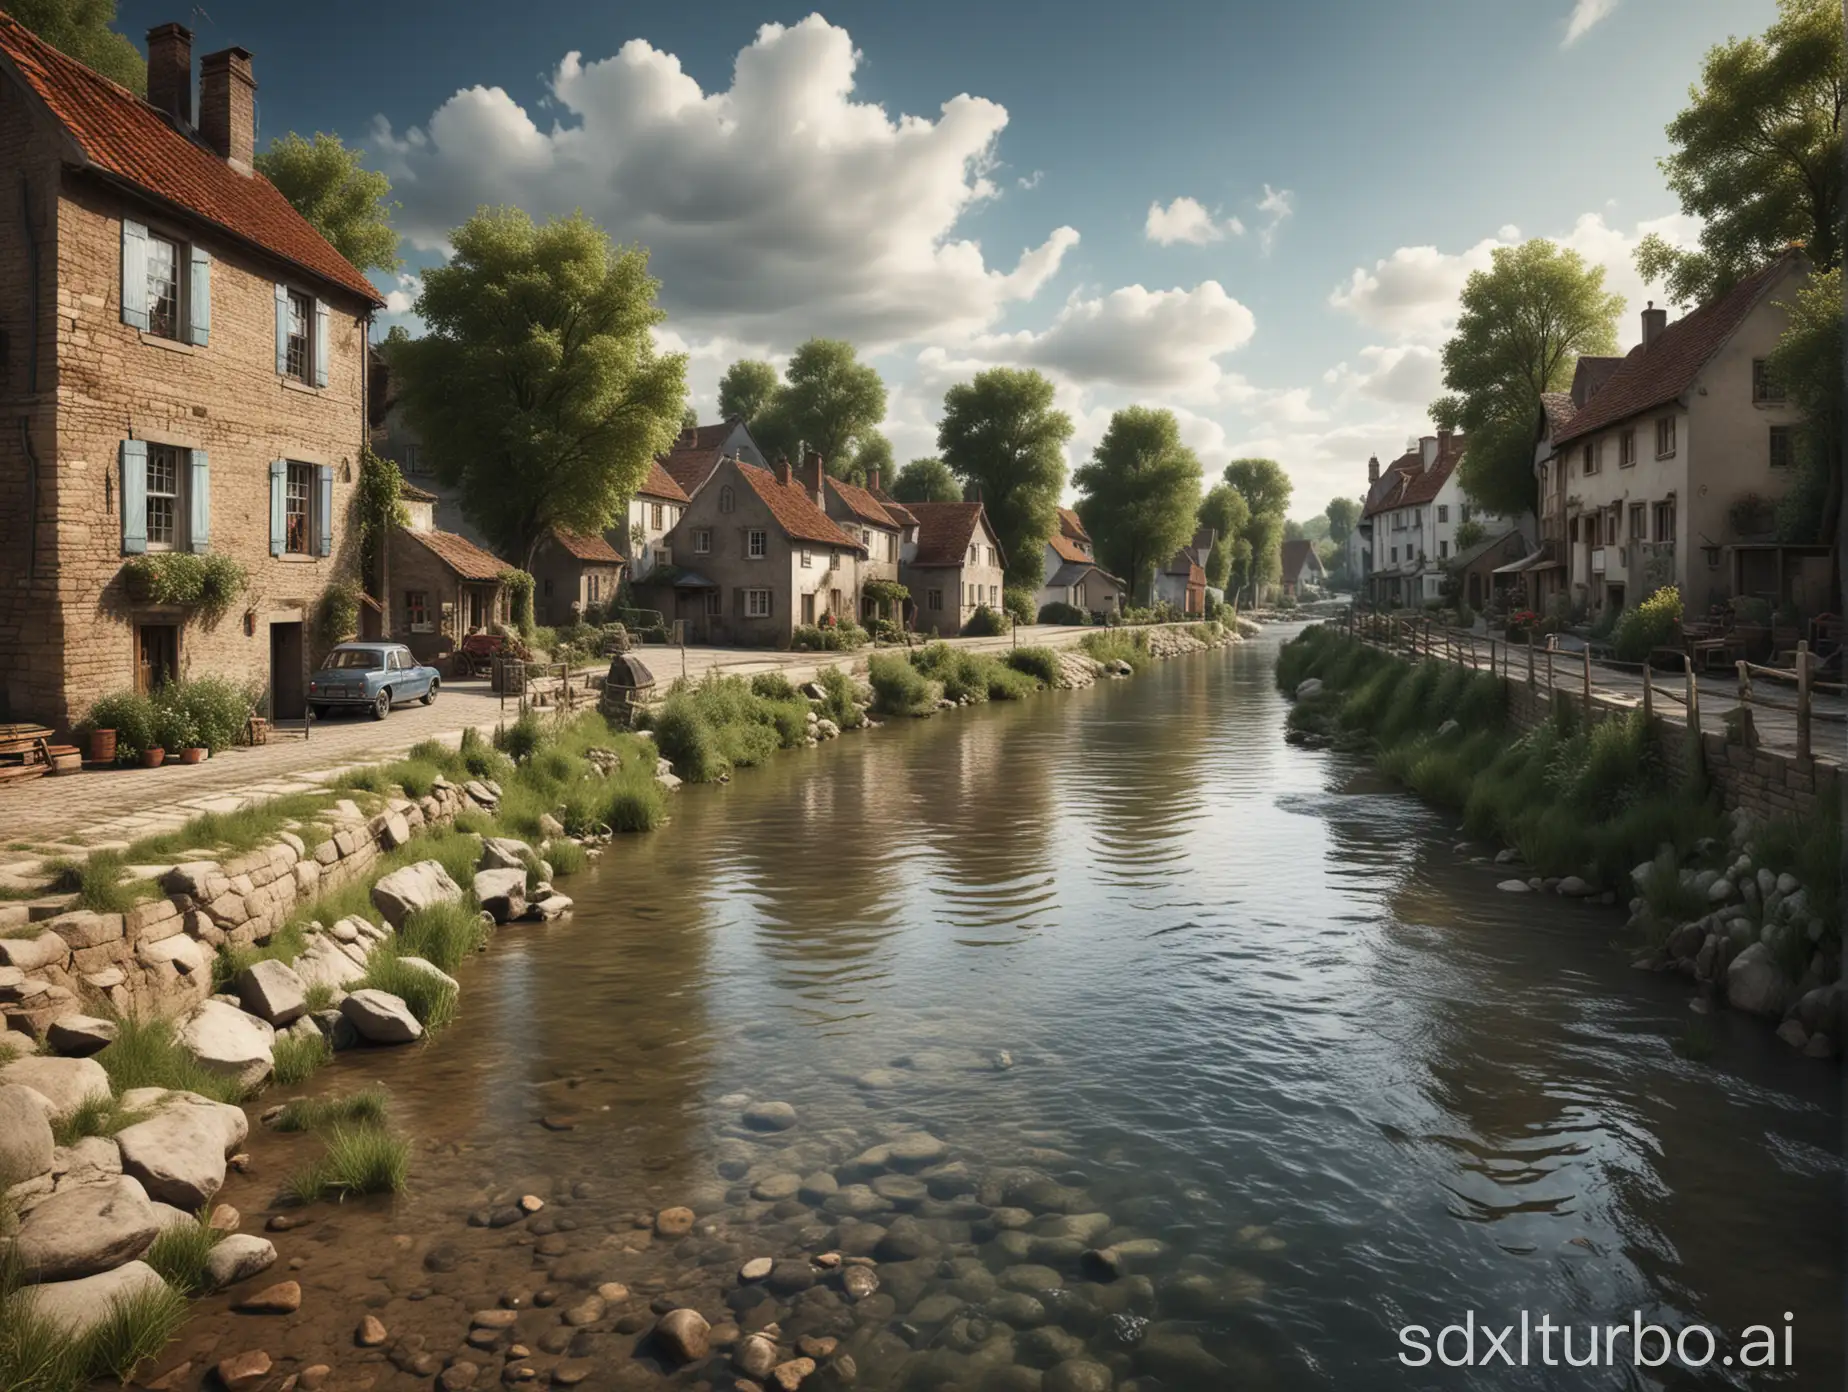 buatkan sebuah foto pemandangan sungai yang asri dan bersih di tengah tengah desa dengan menggunakan foto hyper realistik